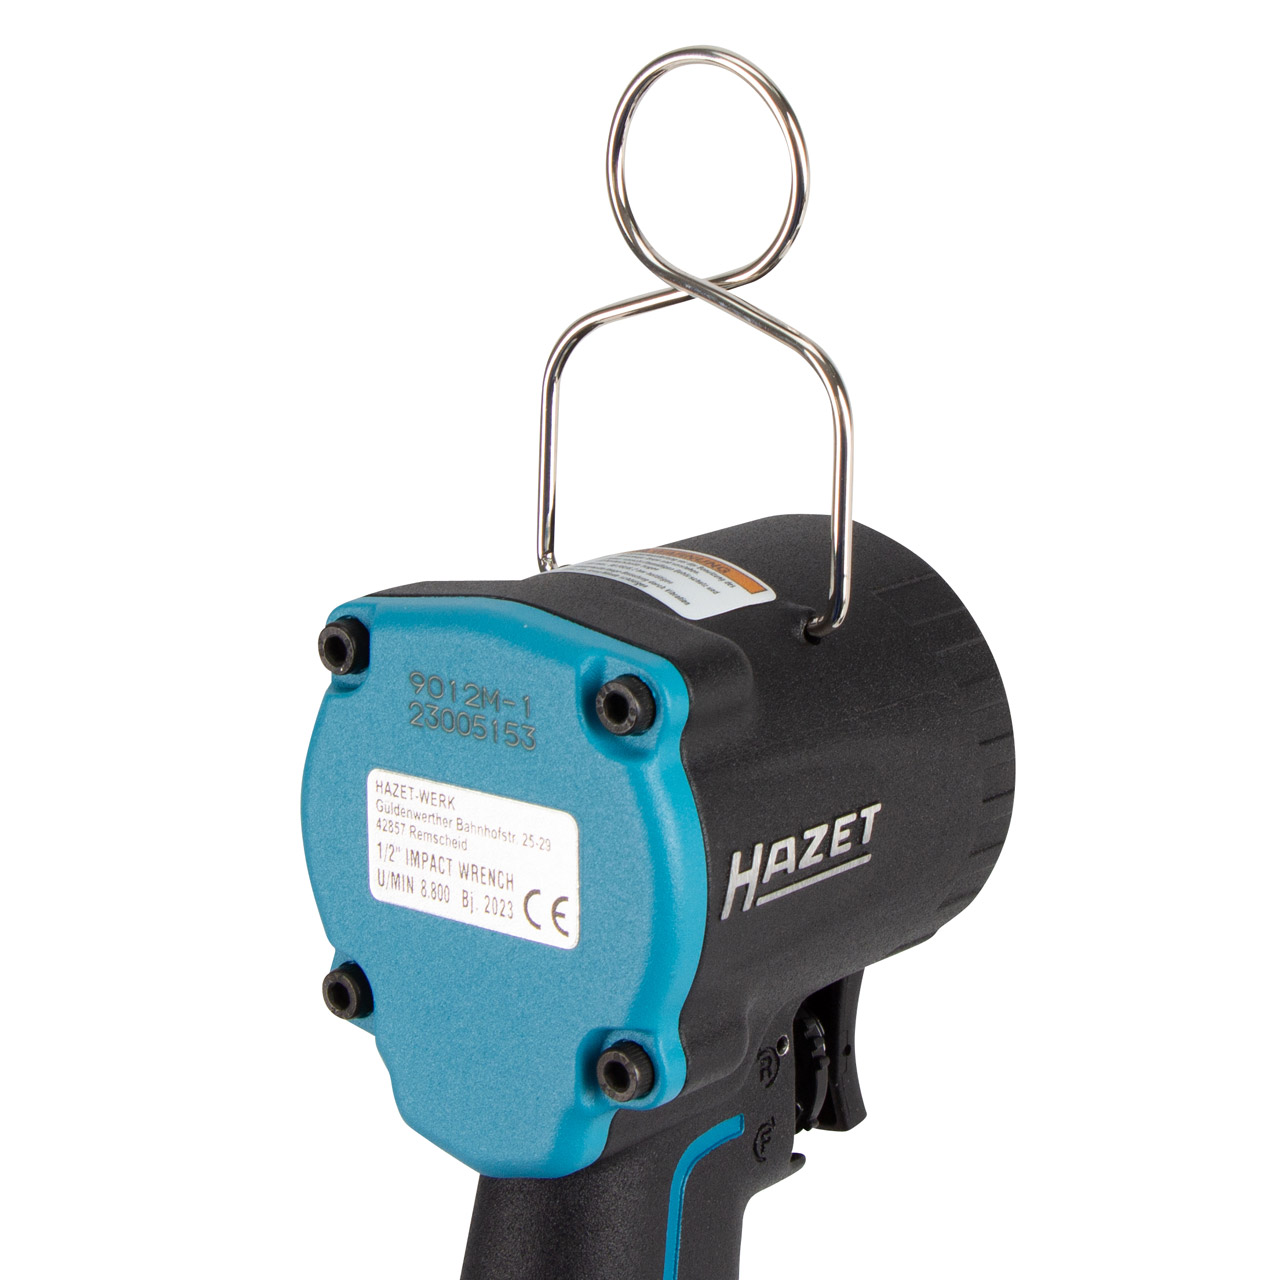 HAZET 9012M-1 Mini Druckluft Schlagschrauber 1/2" Einhand-Umschaltung max. 1200 Nm